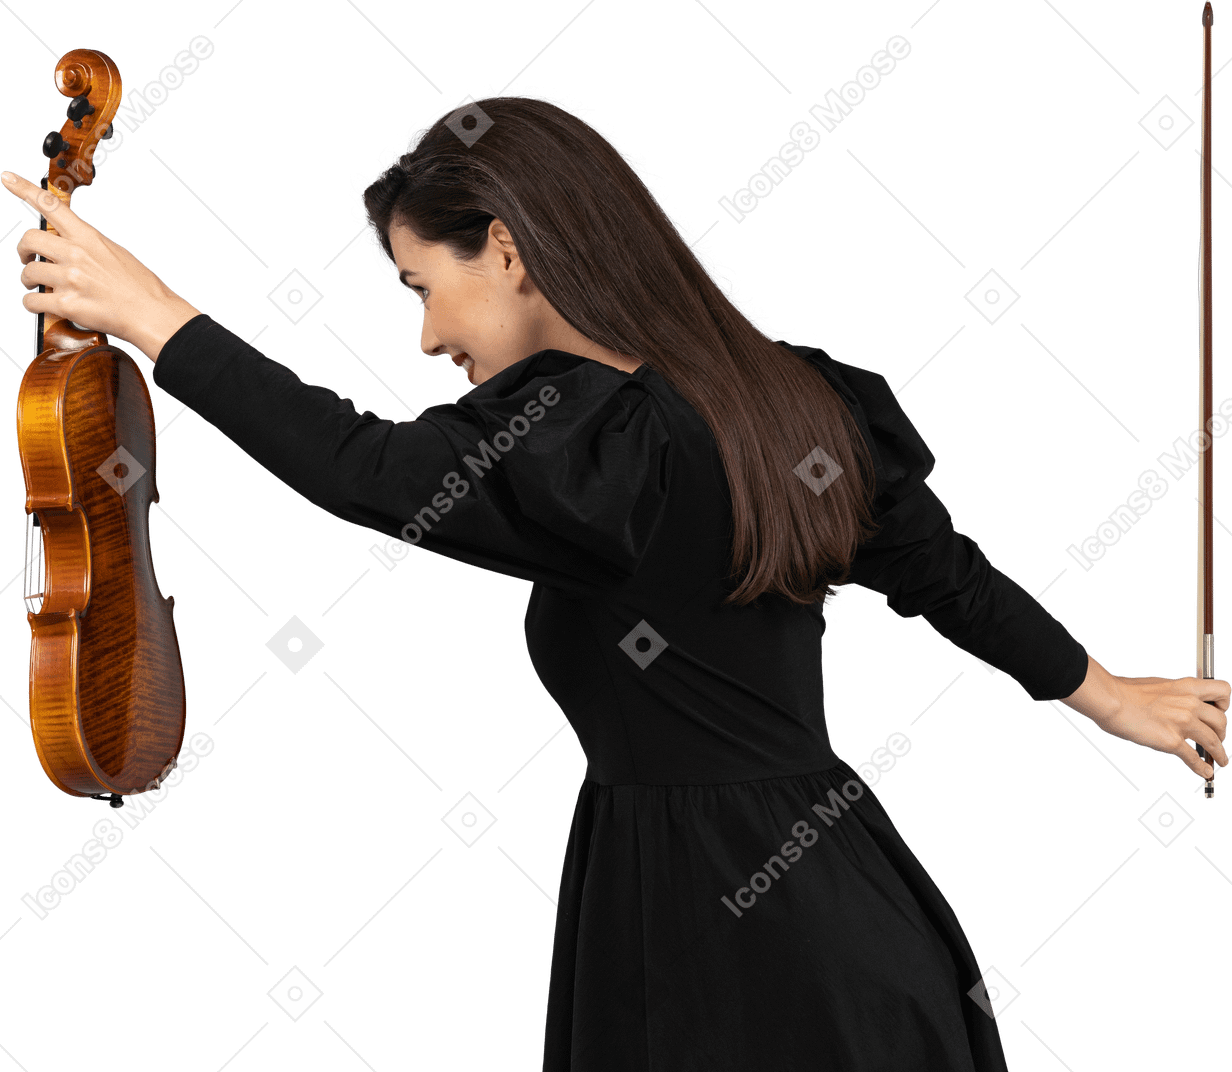 Dreiviertel-rückansicht einer geigenspielerin in schwarzem kleid, die einen bogen macht